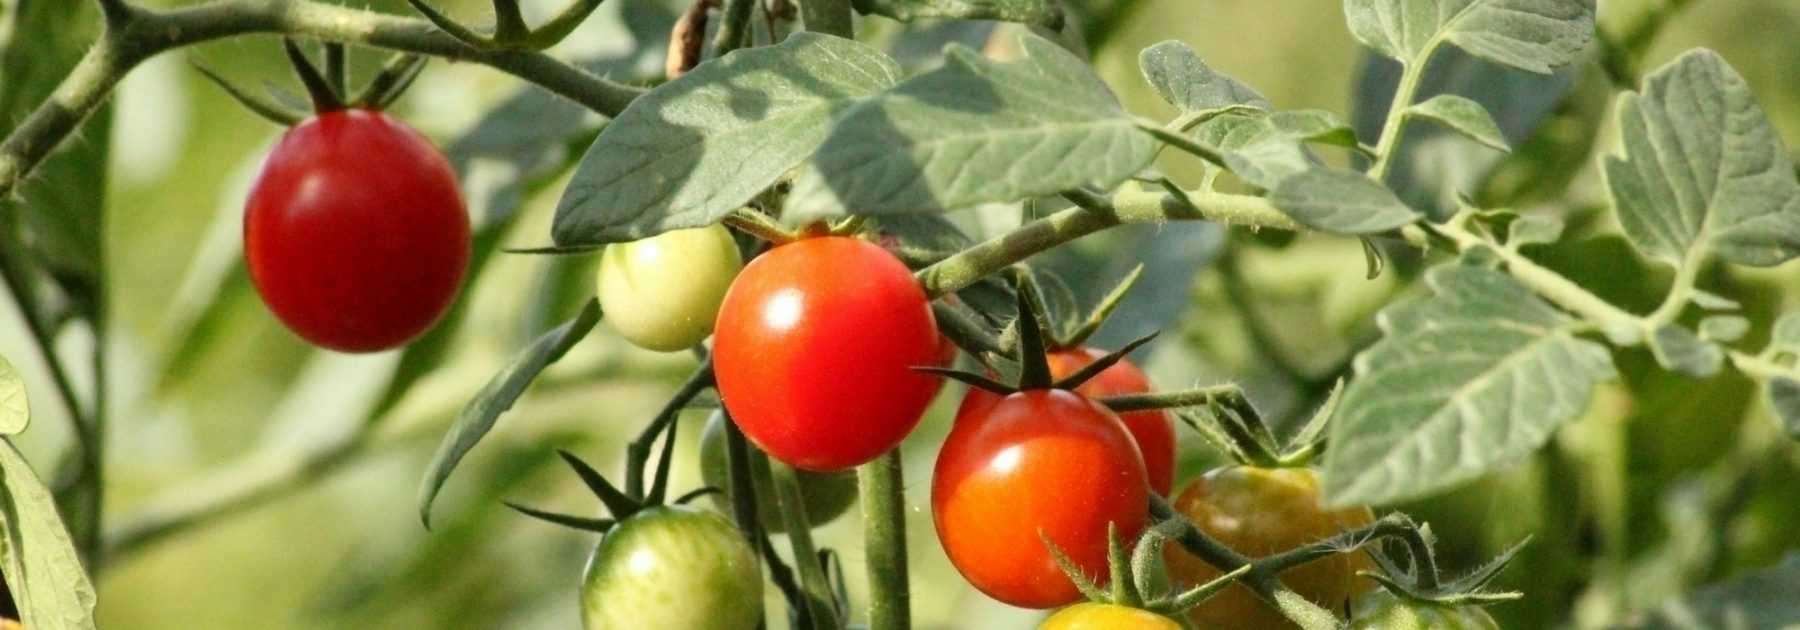 Quels tuteurs utiliser pour vos tomates : piquets, ficelles, cages